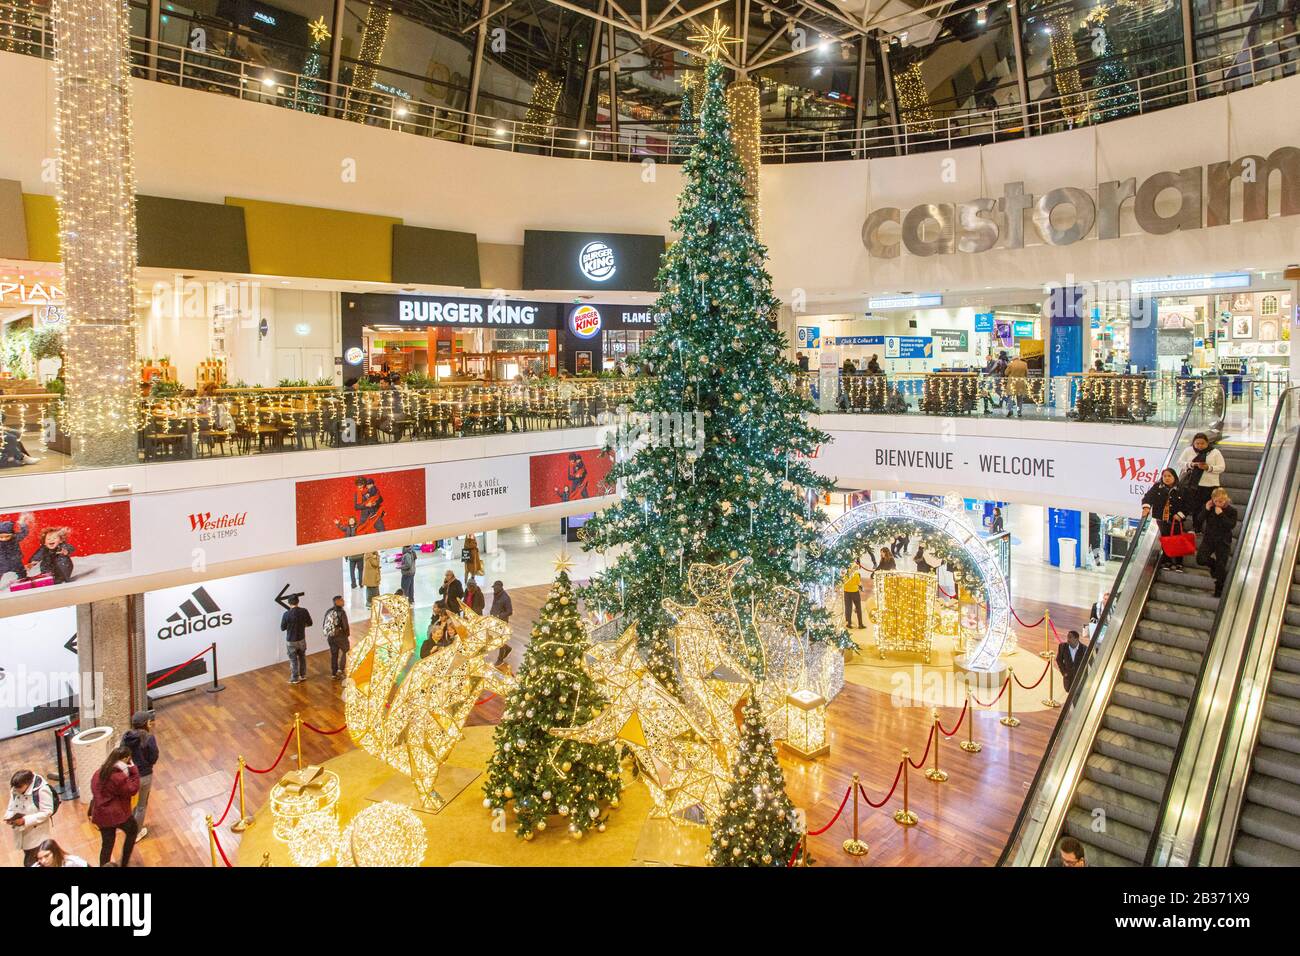 France, Hauts de Seine, La business district, shopping mall Westfield Les 4 Temps Stock Photo Alamy